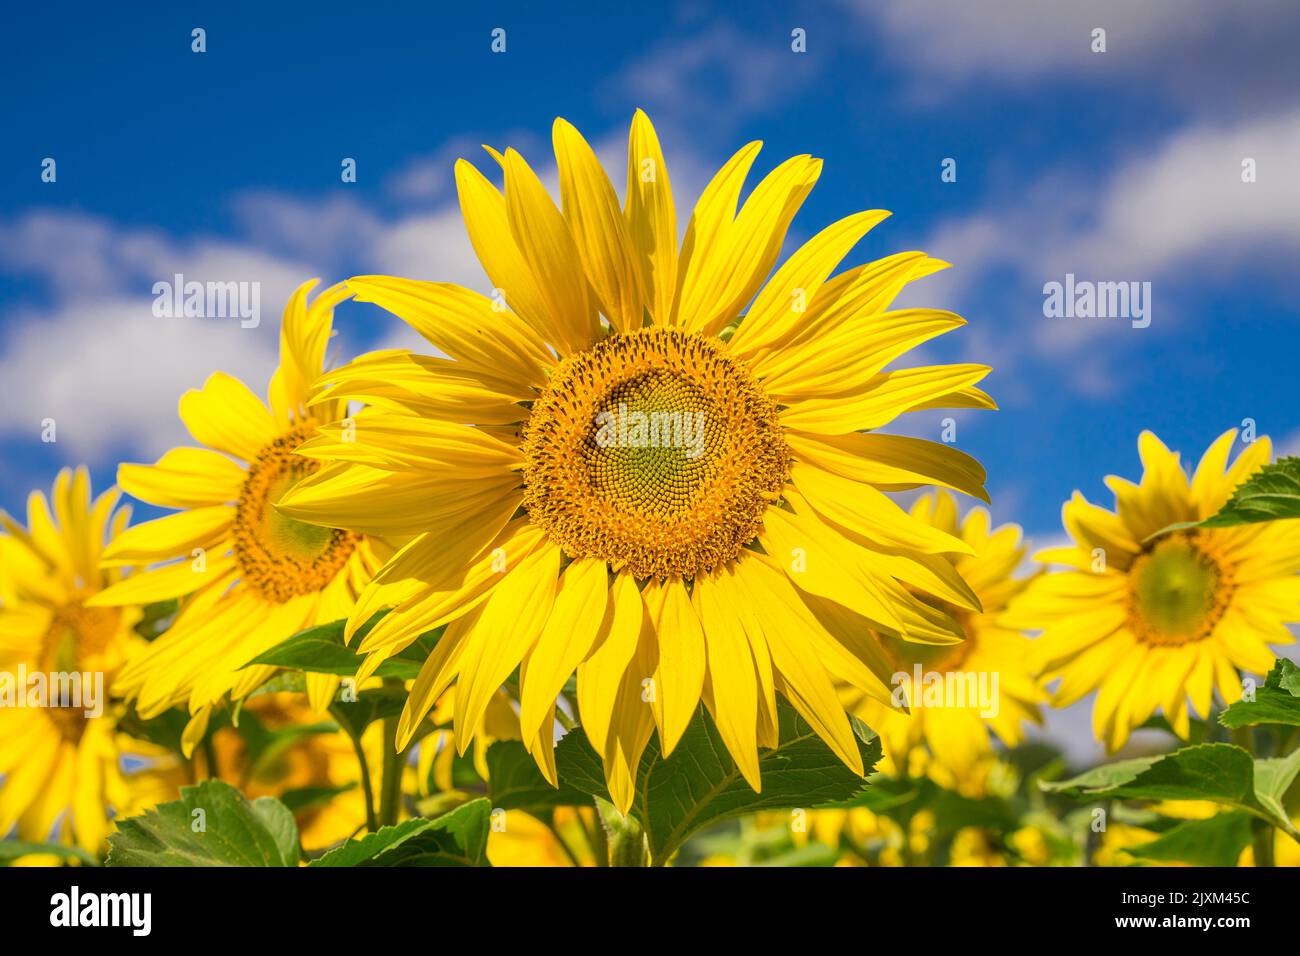 vue de face gros plan de la tête de tournesol dans un champ de tournesols et un fond bleu ciel. Deux abeilles assises sur la fleur. Banque D'Images